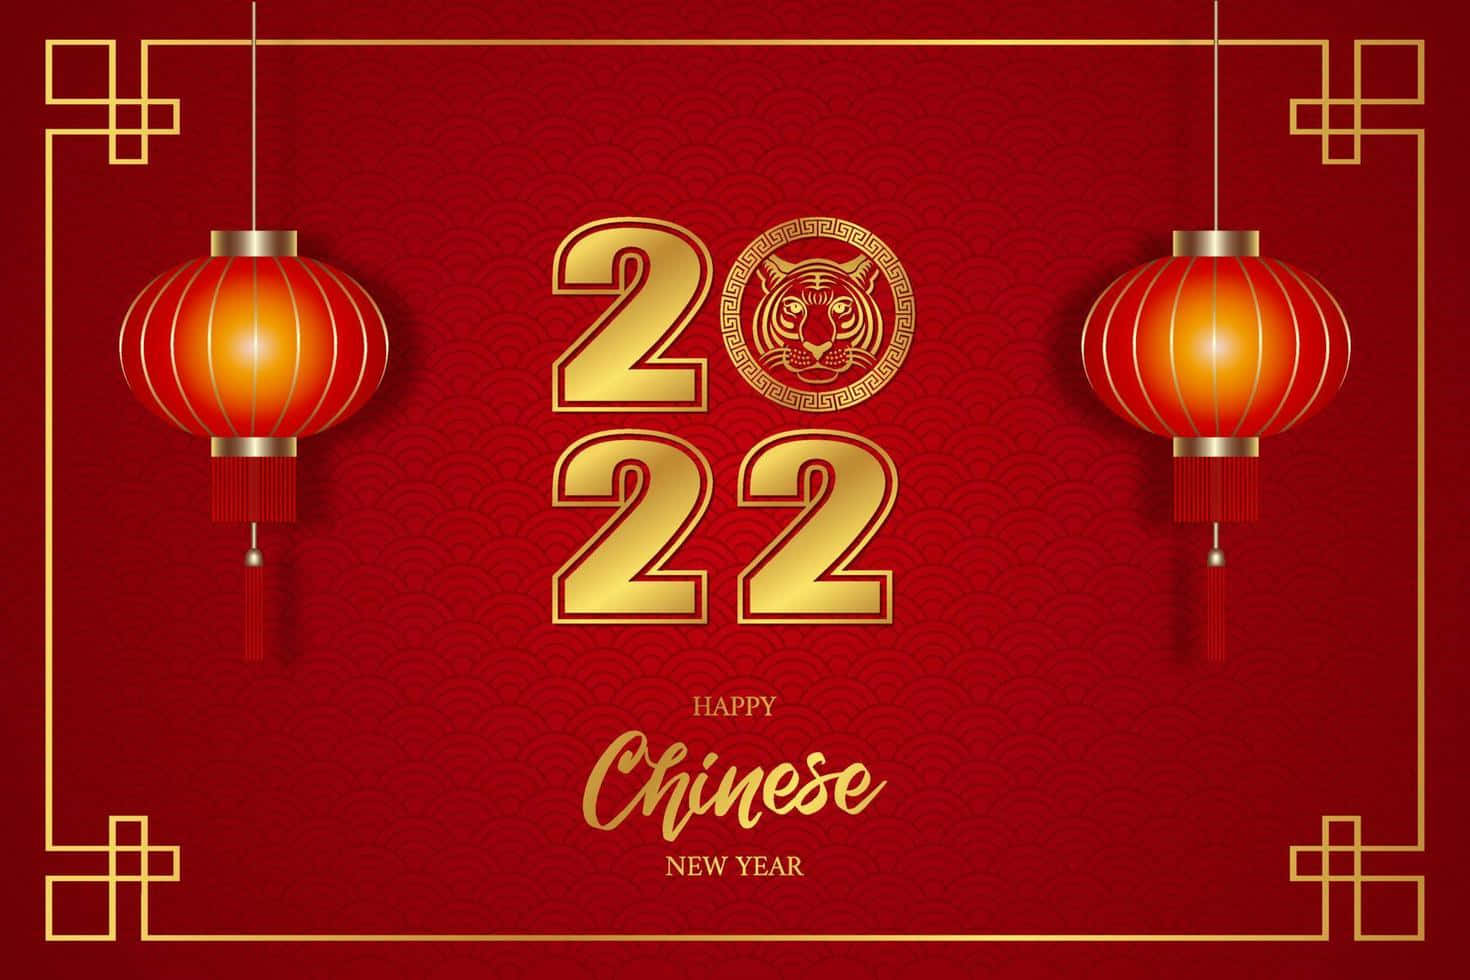 Chinesischesneujahr 2020 Mit Goldenen Laternen Und Rotem Hintergrund